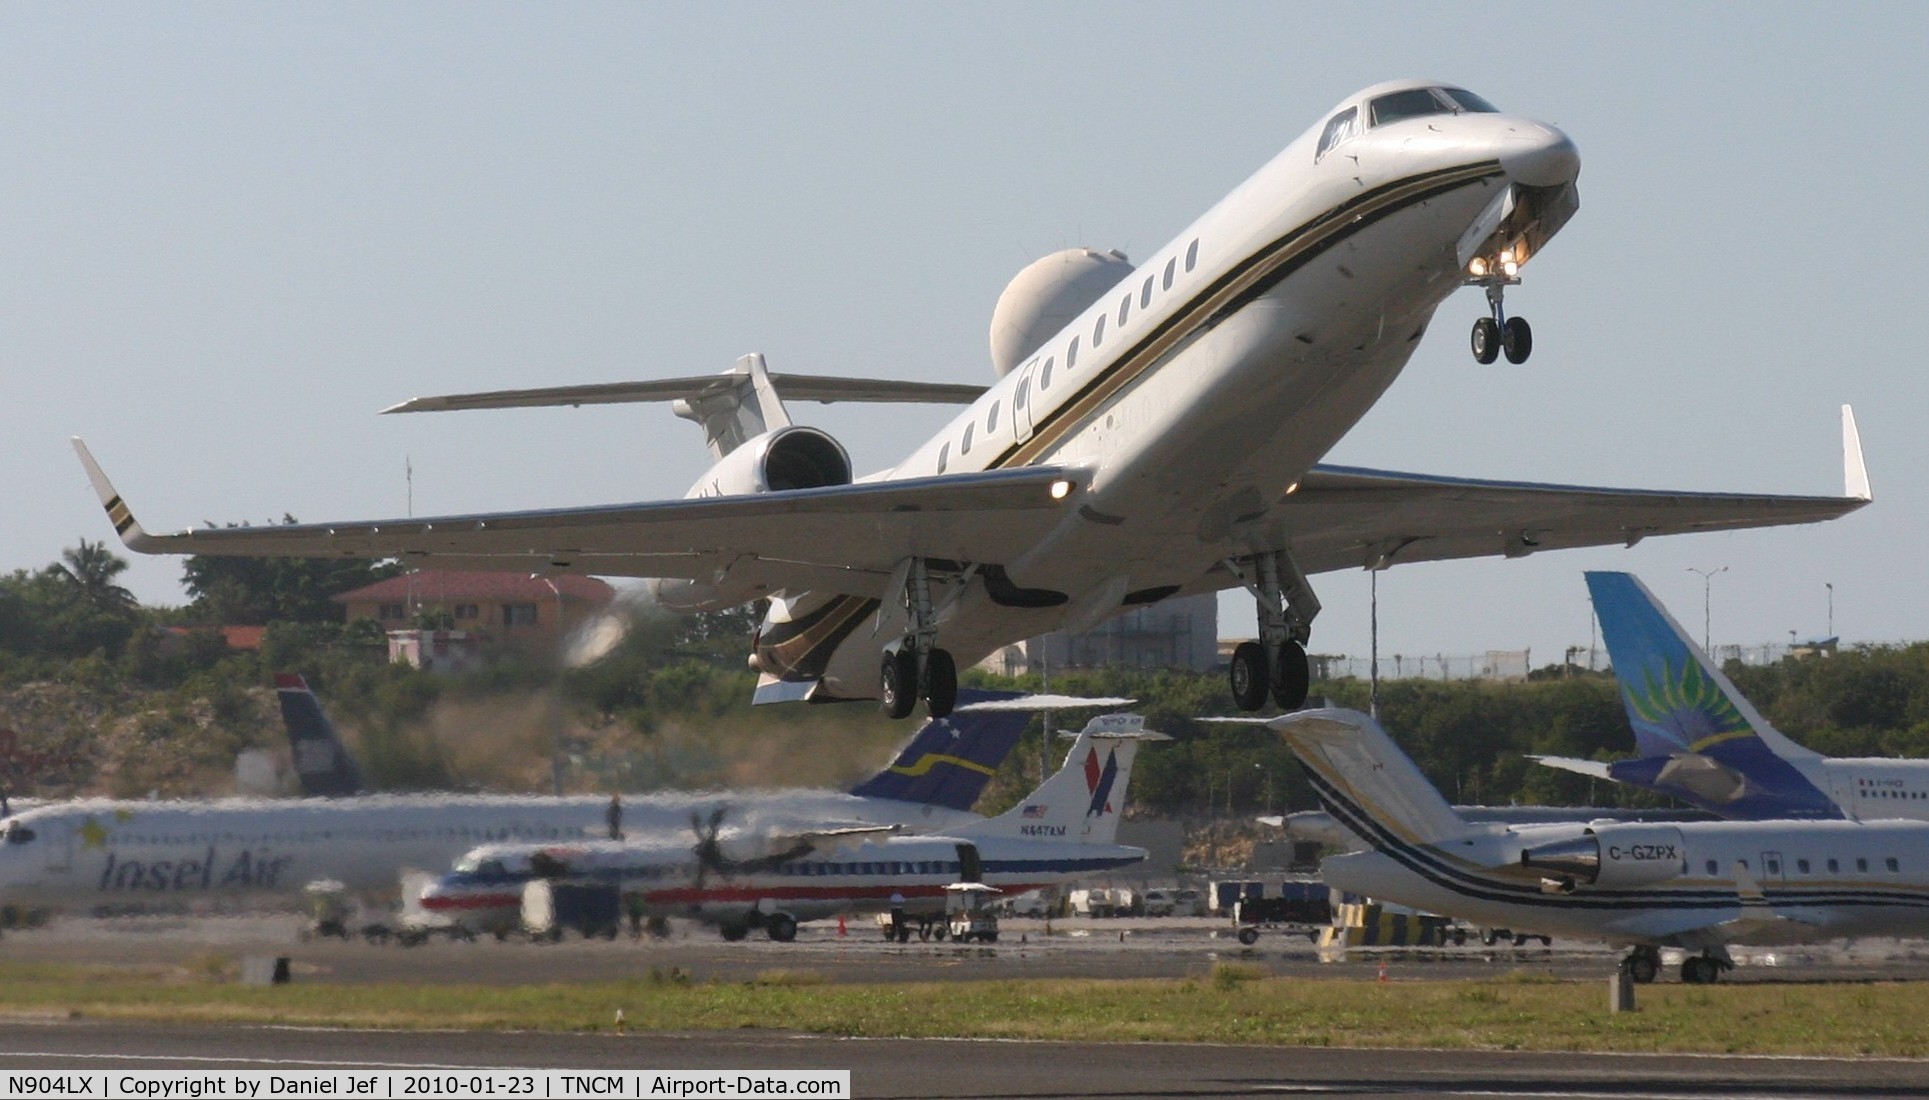 N904LX, 2004 Embraer EMB-135BJ Legacy C/N 145780, N904LX departing TNCM runway 10